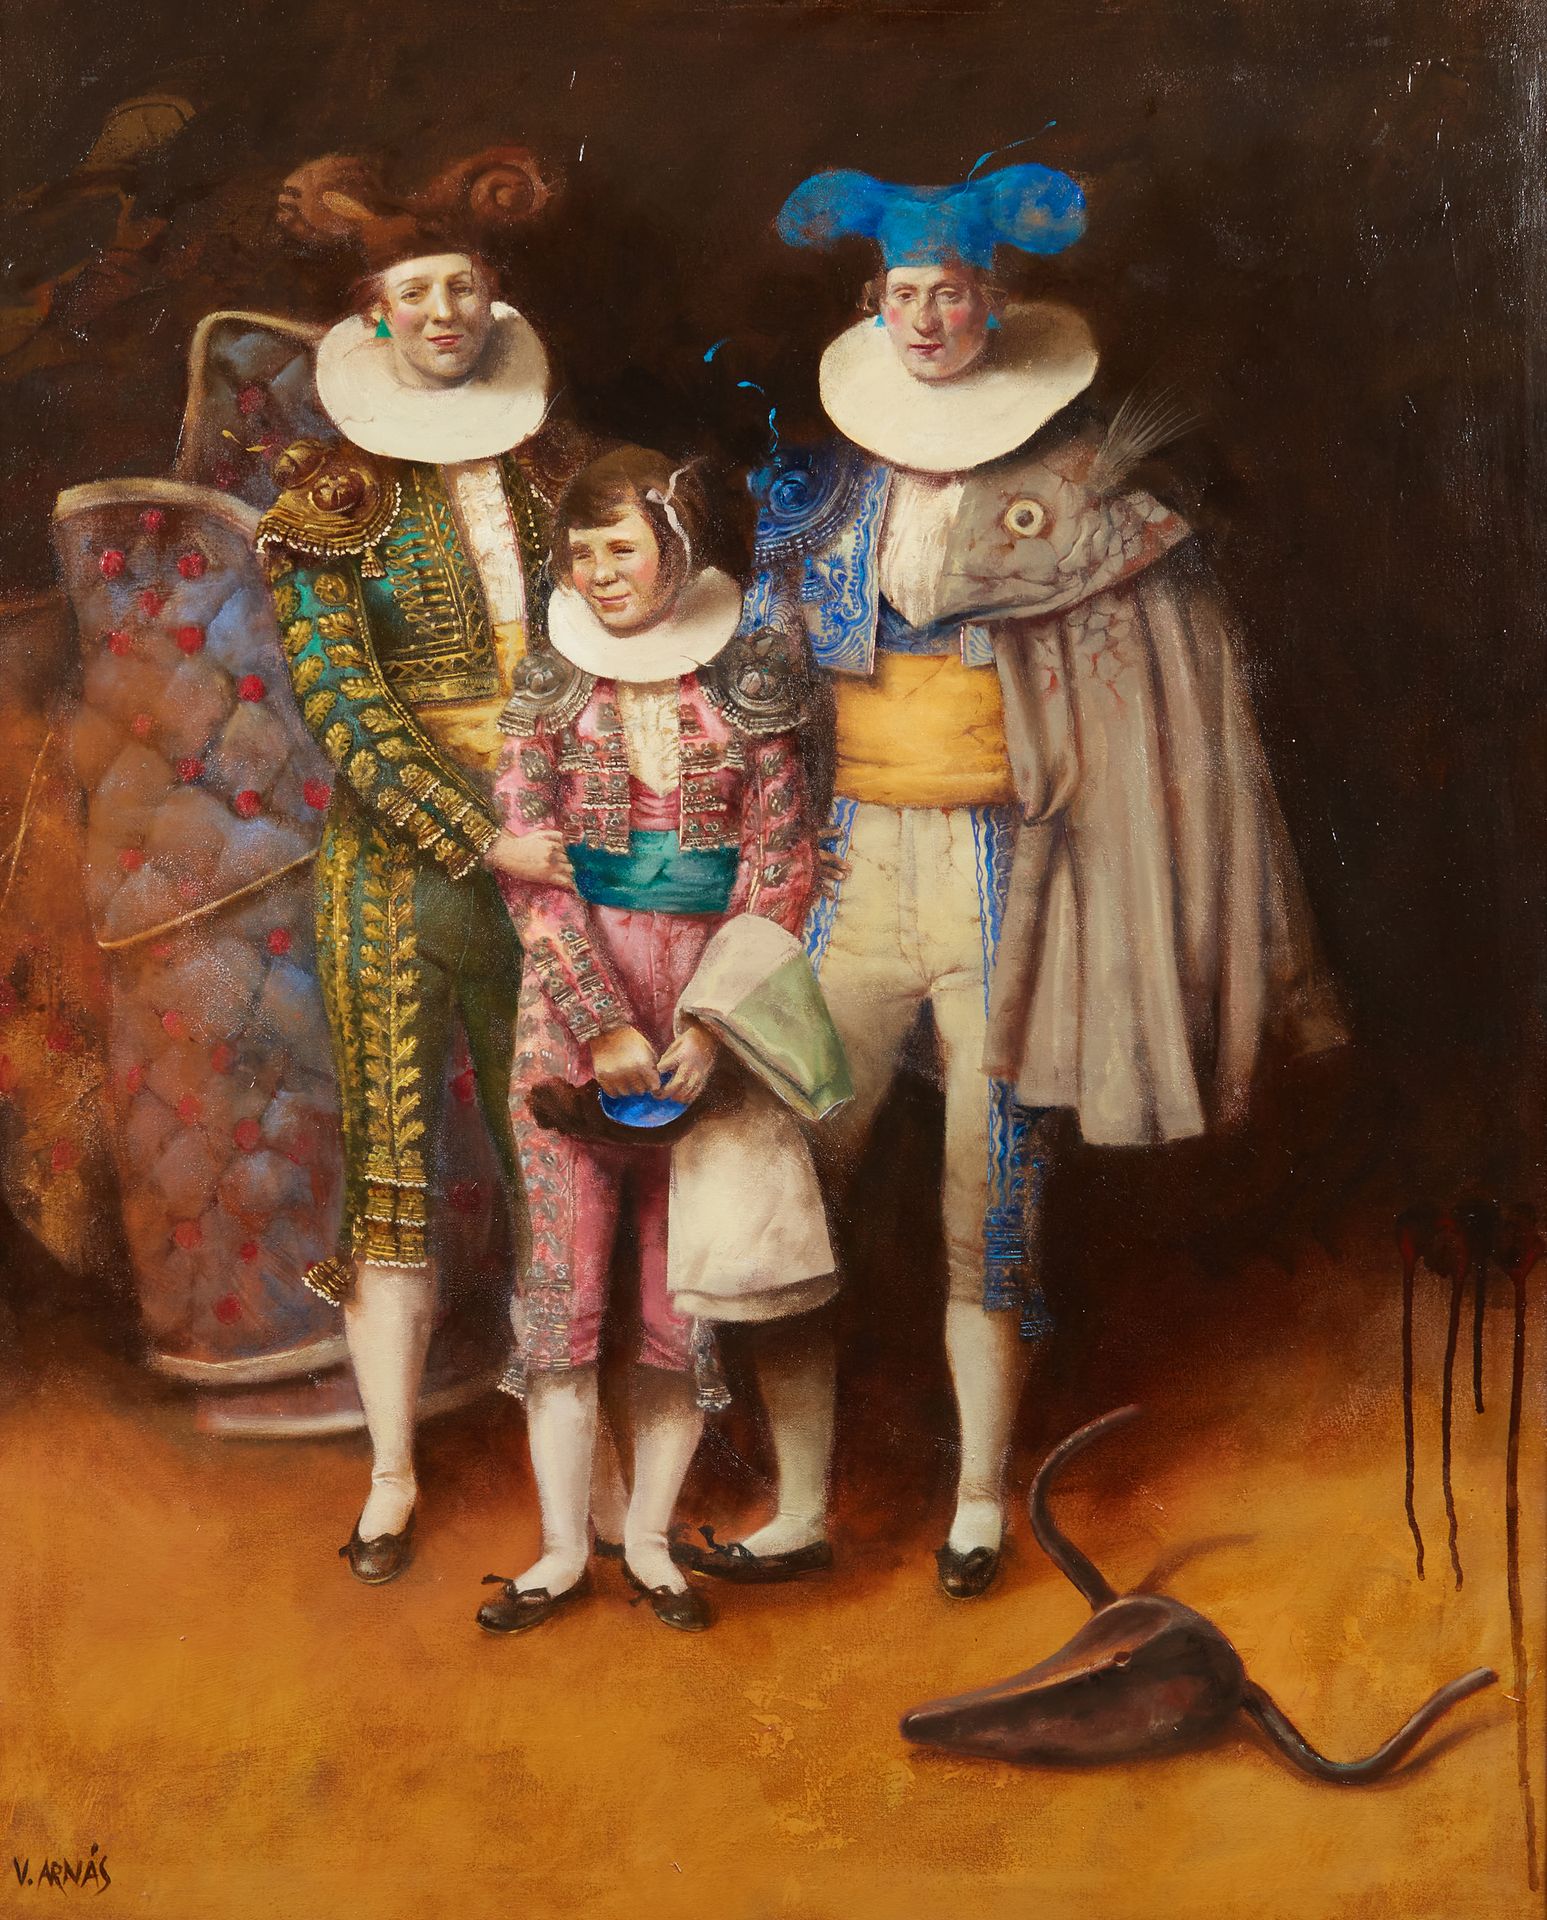 Null Vicente ARNAS LOZANO (生于1949年)
初学者
布面油画，左下角有签名 
98 x 80 cm